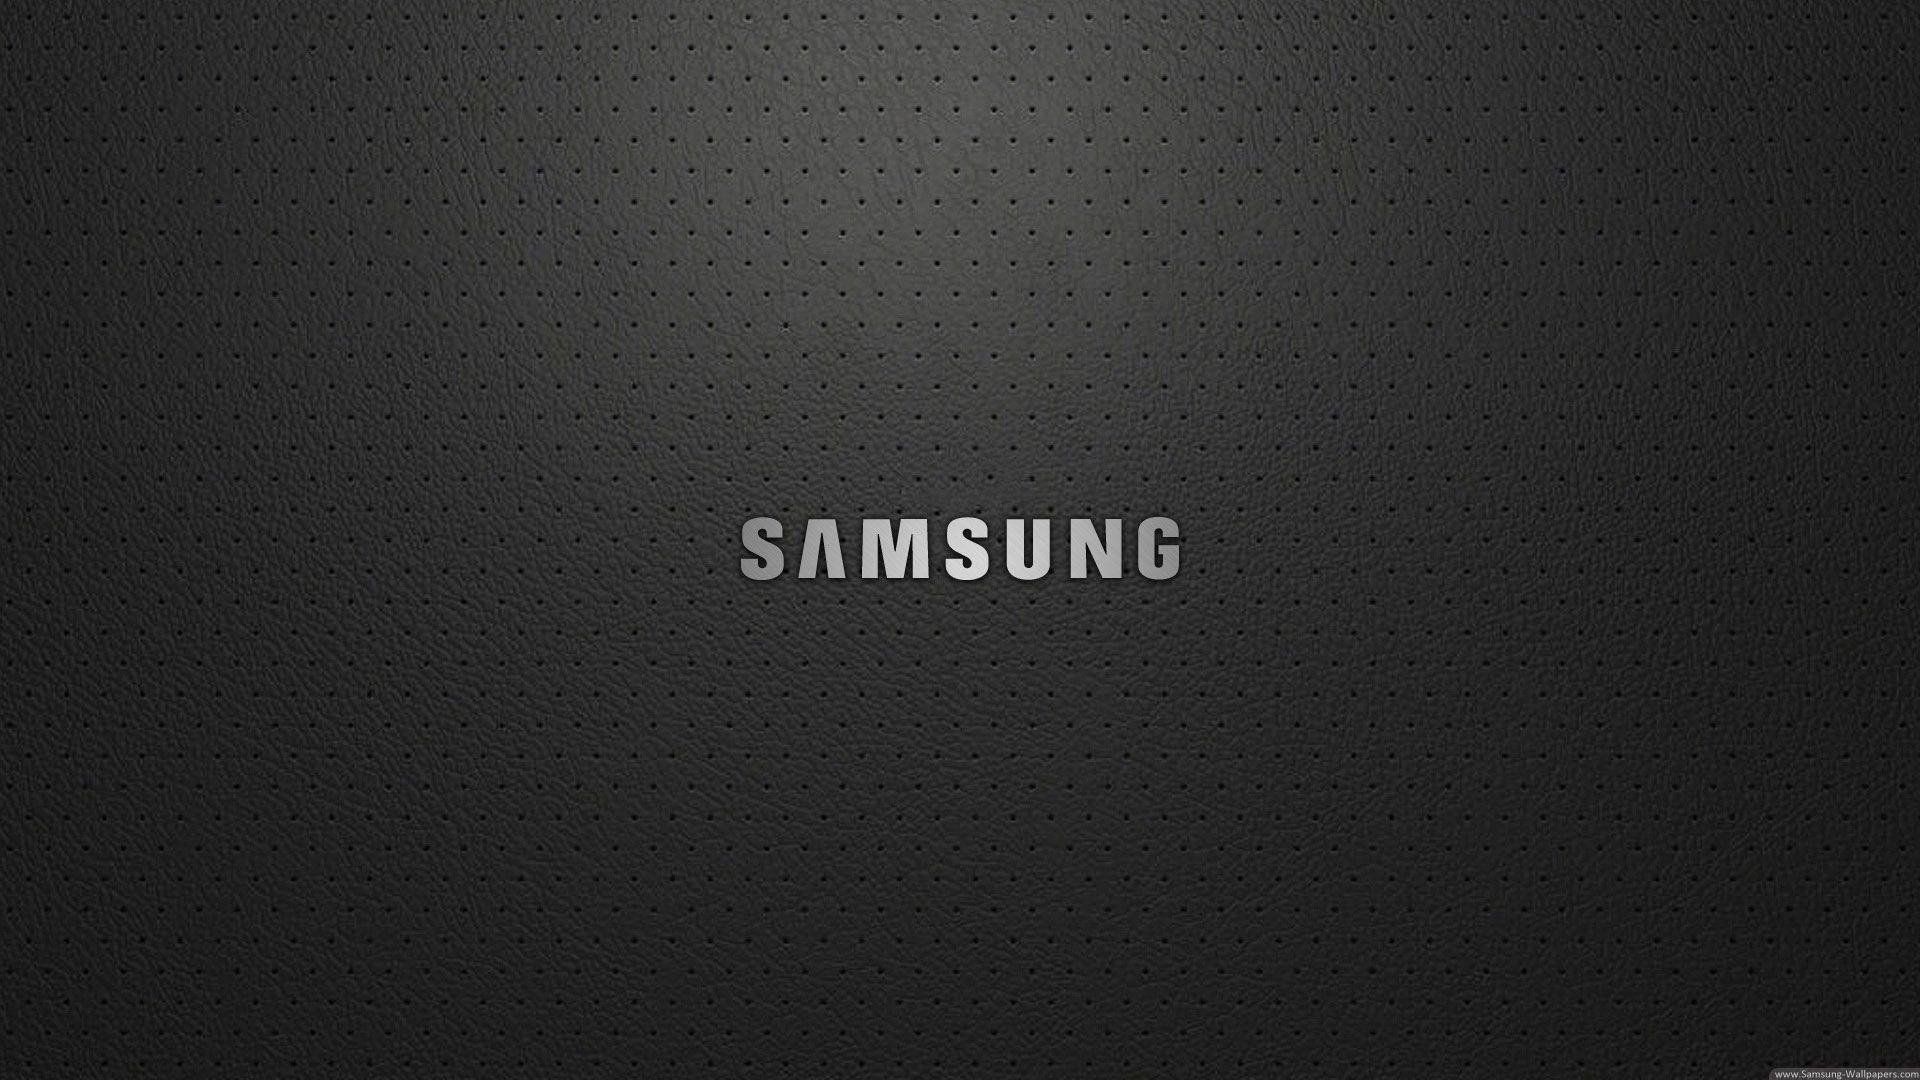 Samsung LED TV Logo Wallpaper